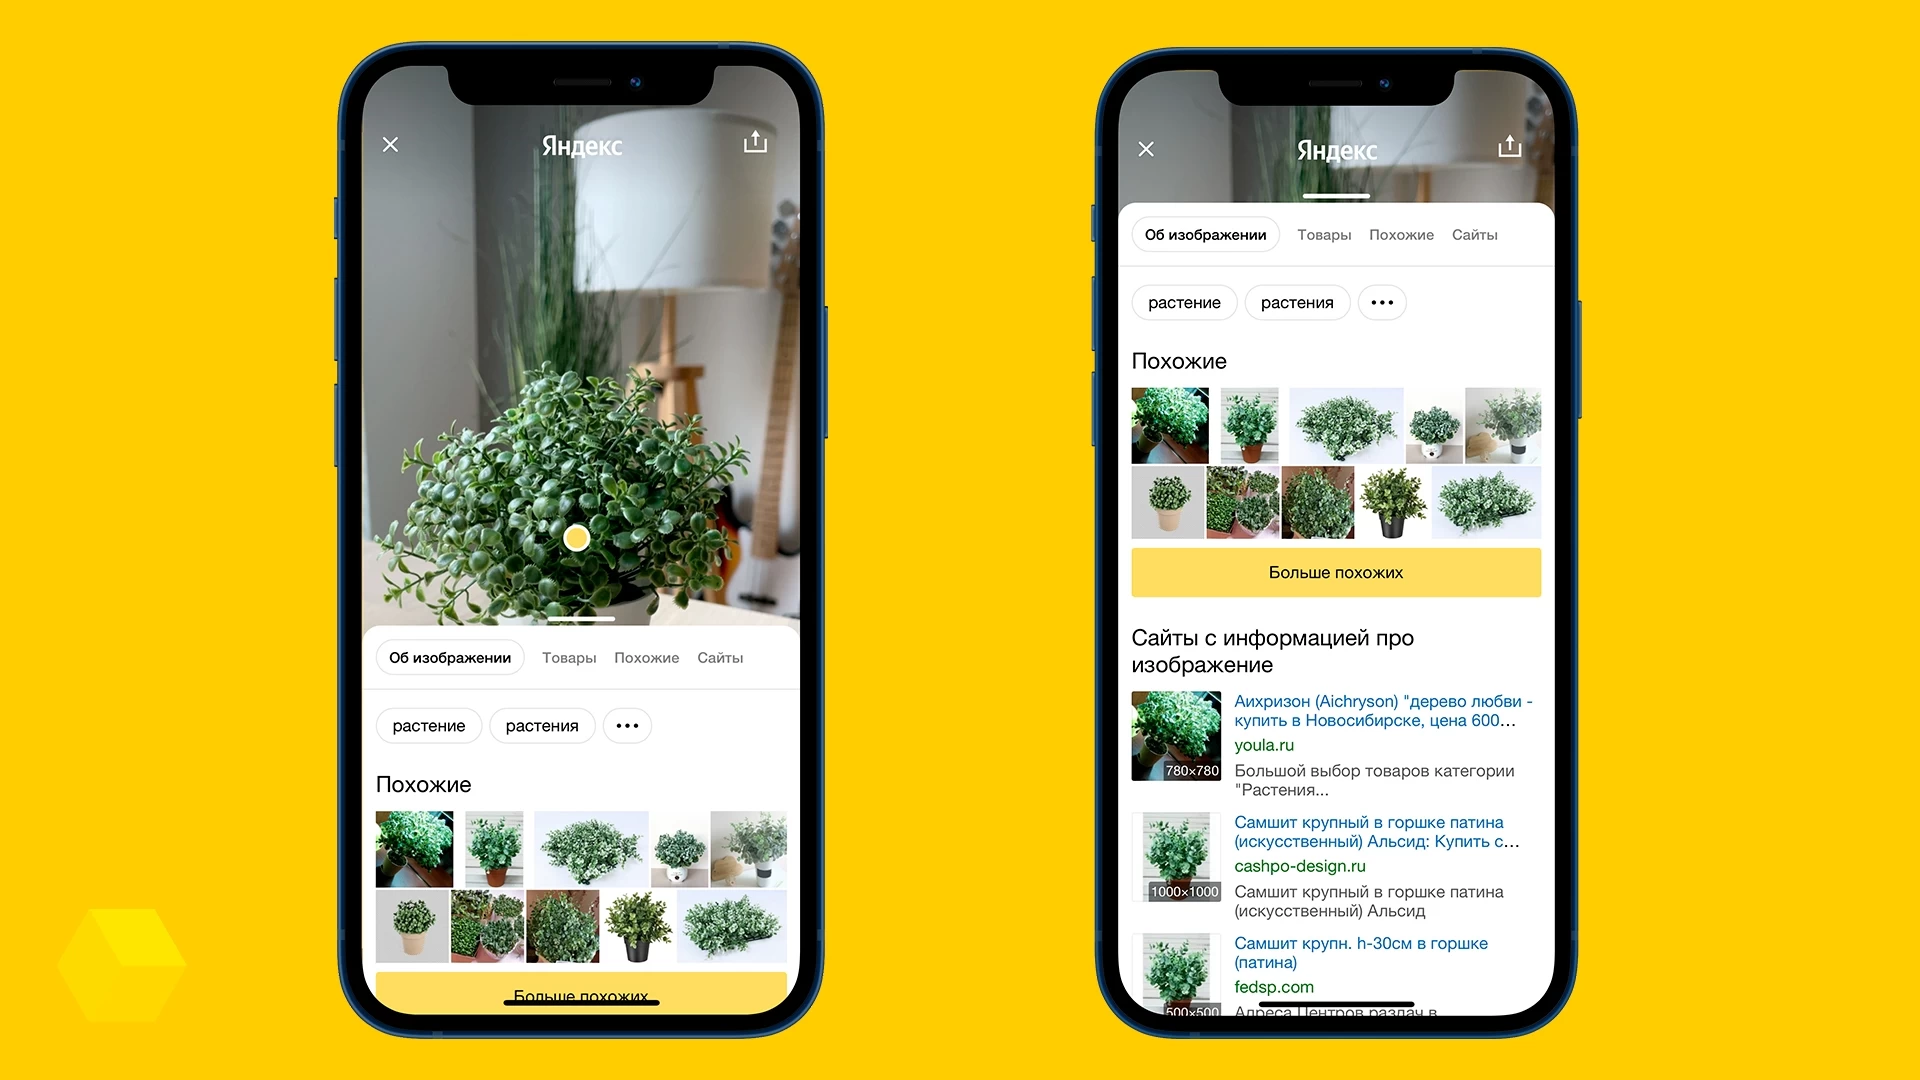 Распознавание по фото растений приложение онлайн